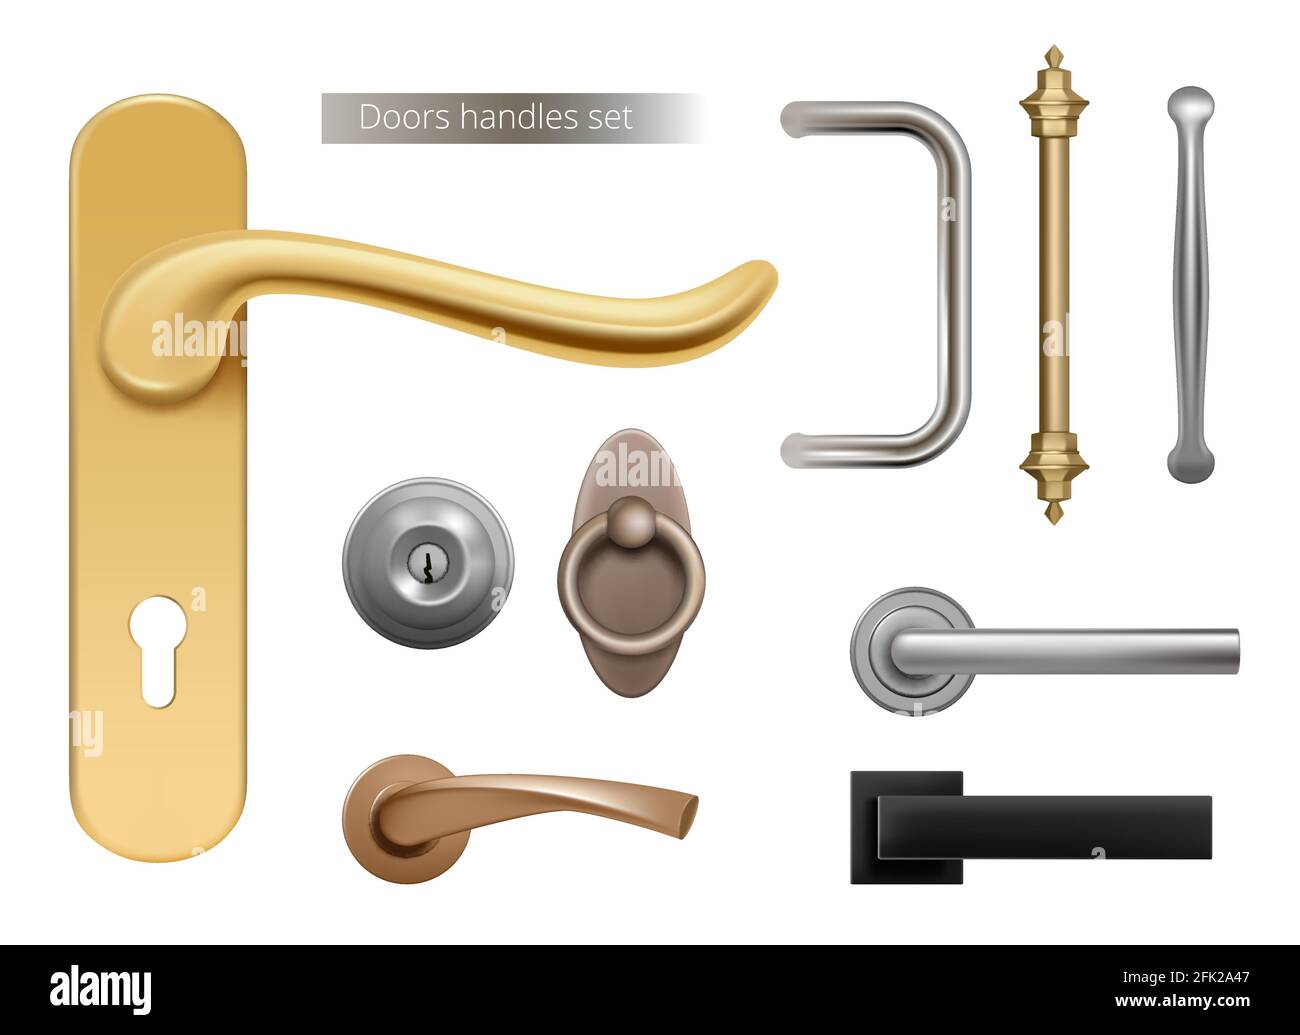 Maniglie delle porte moderne. Maniglie per mobili in argento e metallo dorato per porte aperte elementi interni vettoriali realistici Illustrazione Vettoriale